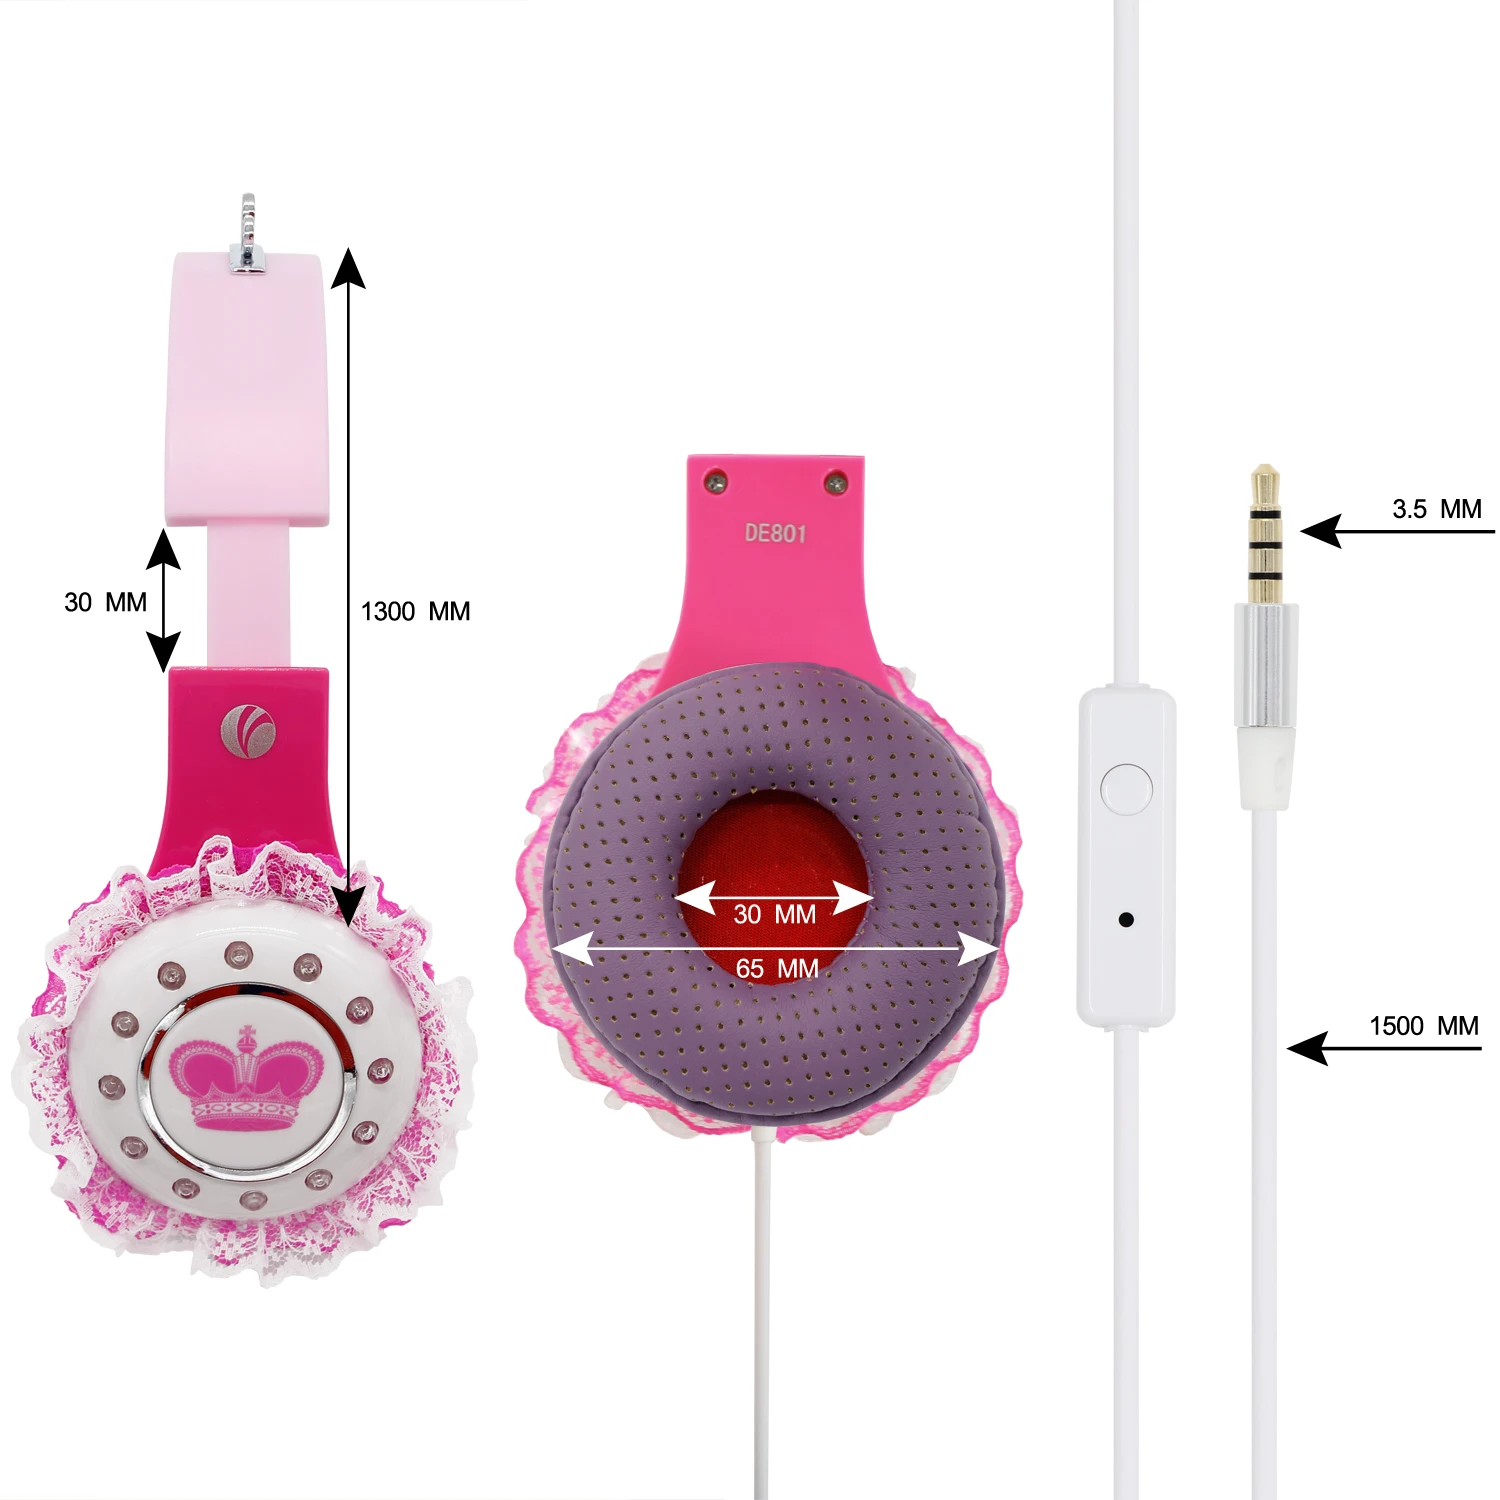 キッズギフトヘッドフォン用マイク付きファッショナブルなかわいいヘッドセット Buy 子供ヘッドフォン 子供のギフト 子供のためのかわいいヘッドフォン Product On Alibaba Com